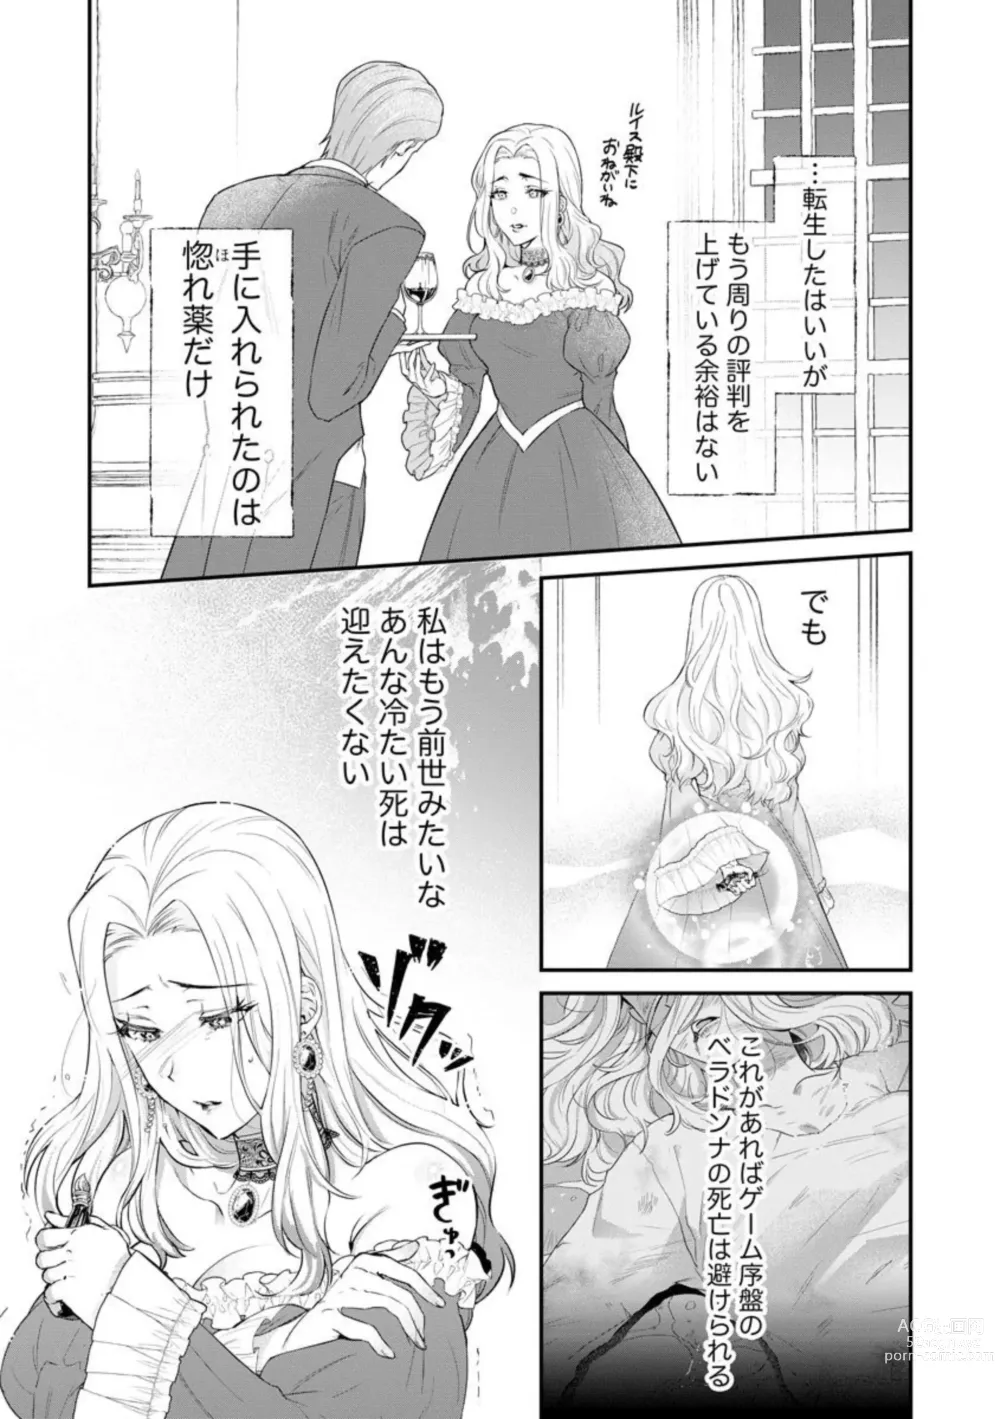 Page 5 of manga Kaibutsu Hakushaku no Amai Hana Akuyaku Reijou wa Bed de Midare Chiru 1